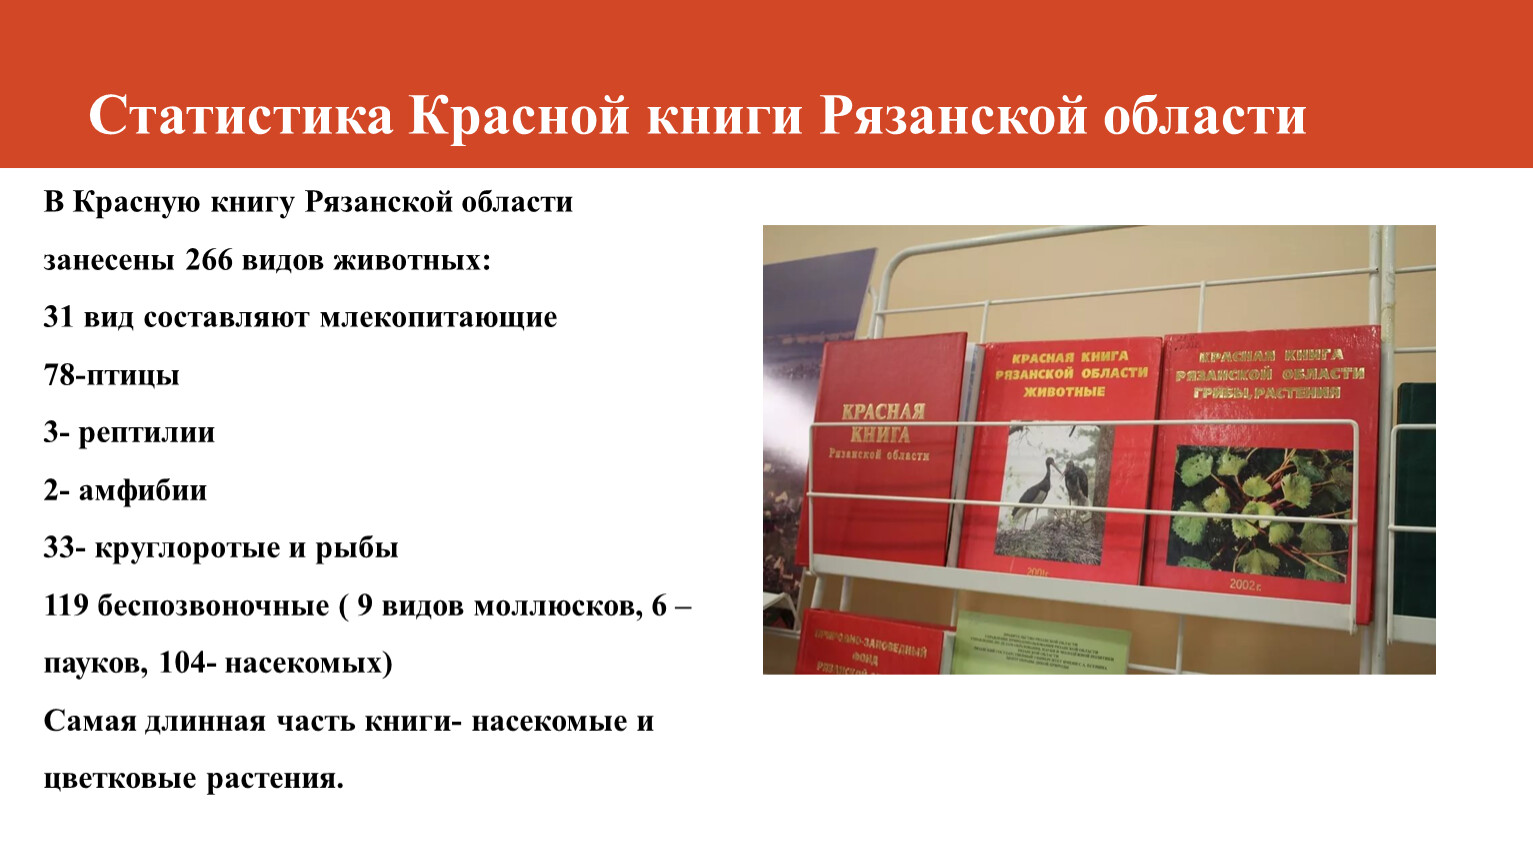 Животные красной книги Рязанской области